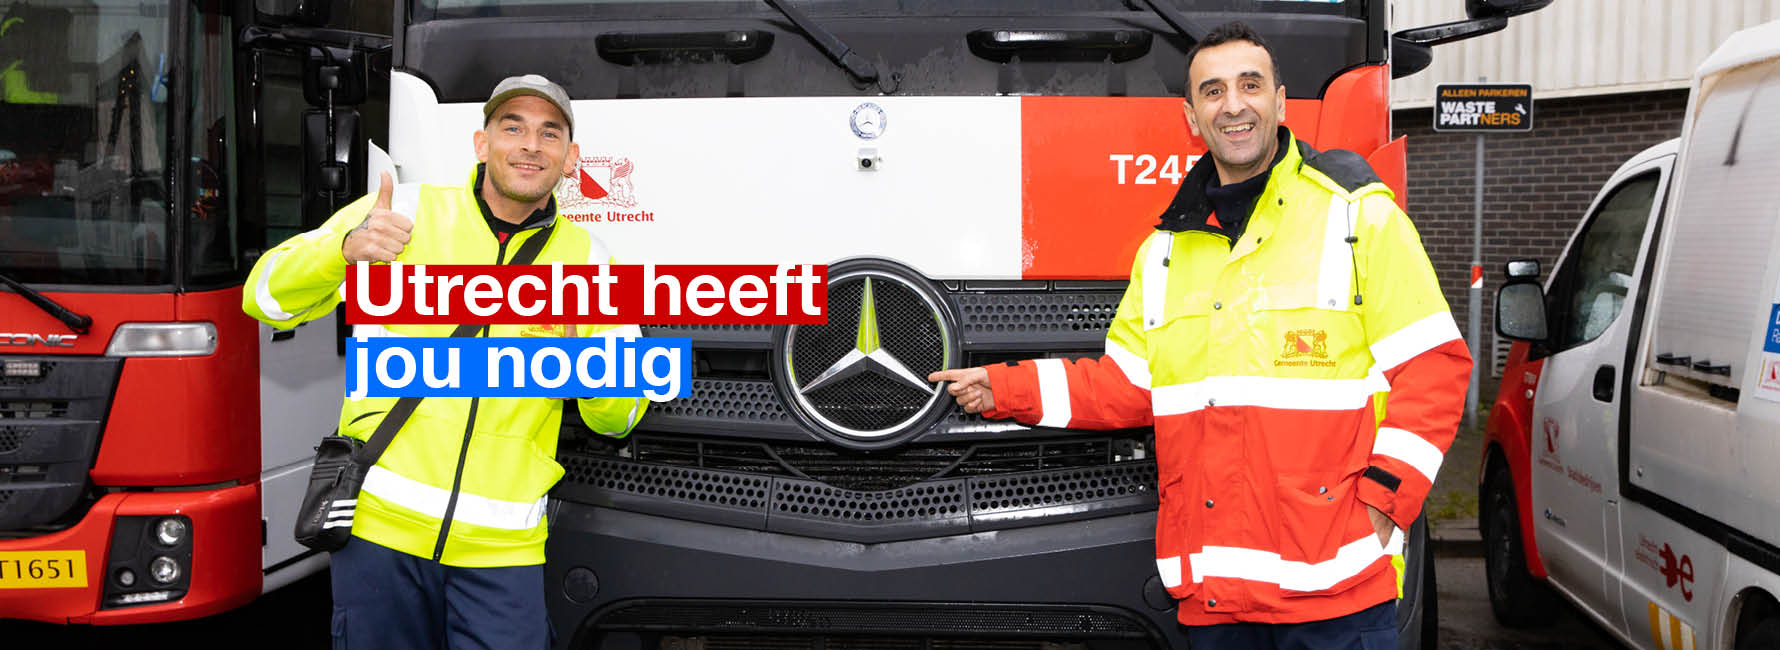 Twee mannen staan bij een vrachtwagen. In beeld staat de tekst Utrecht heeft jou nodig.